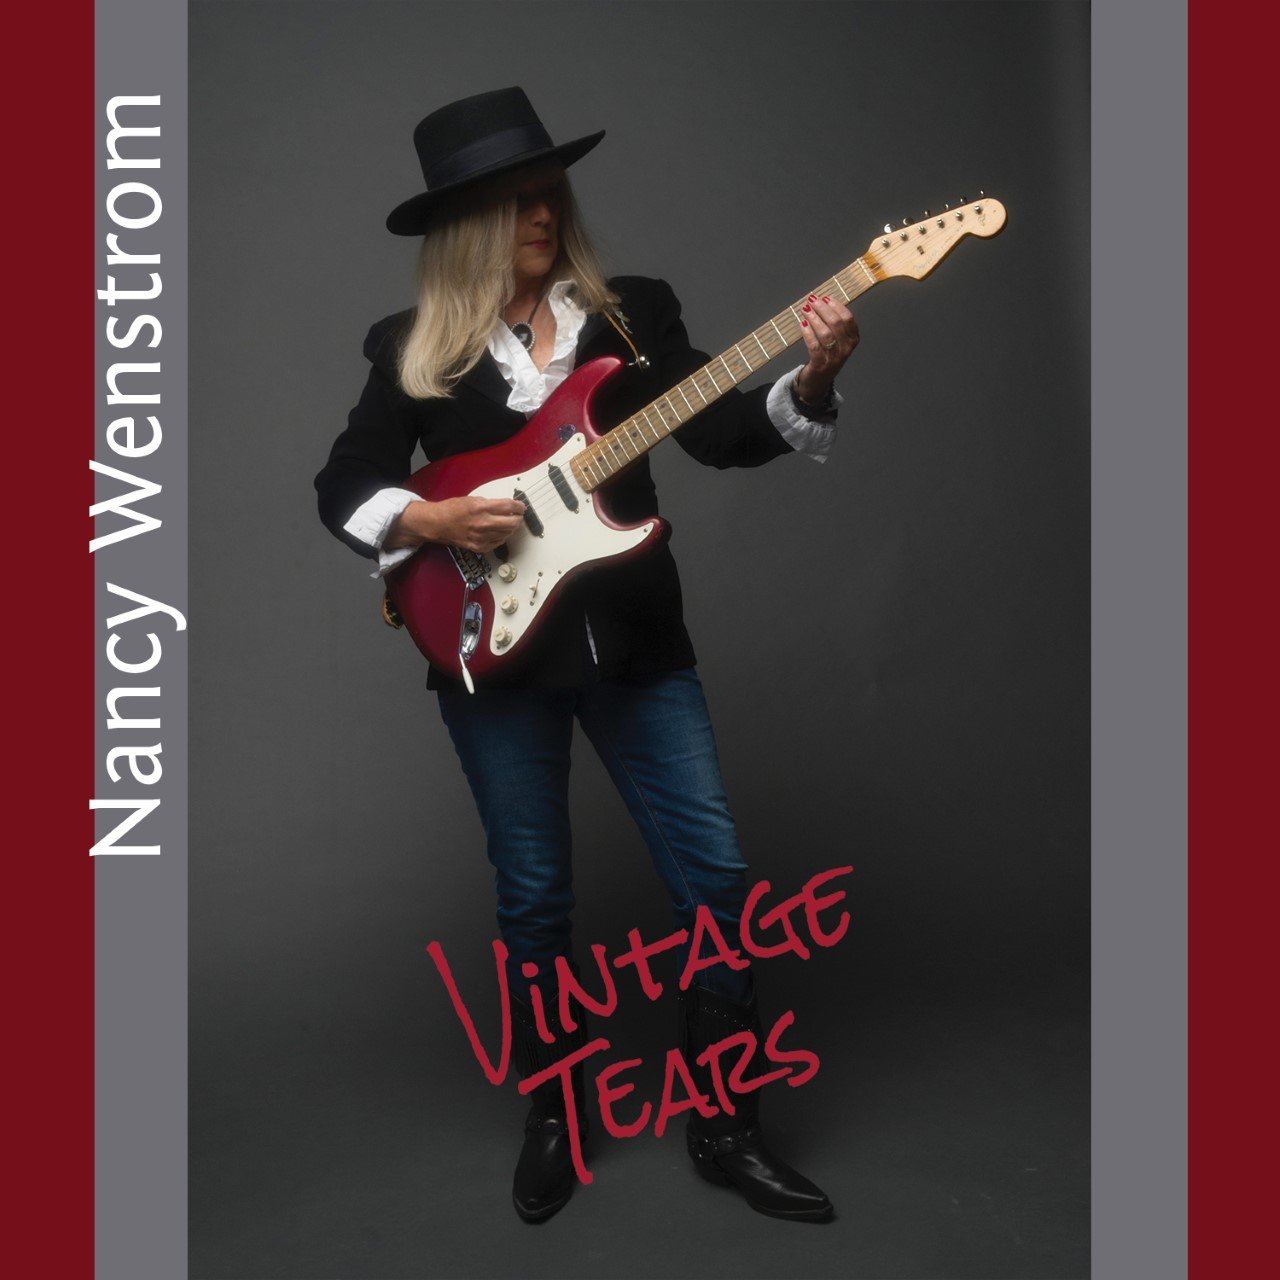 Nancy Wenstrom “Vintage Tears” Single Release